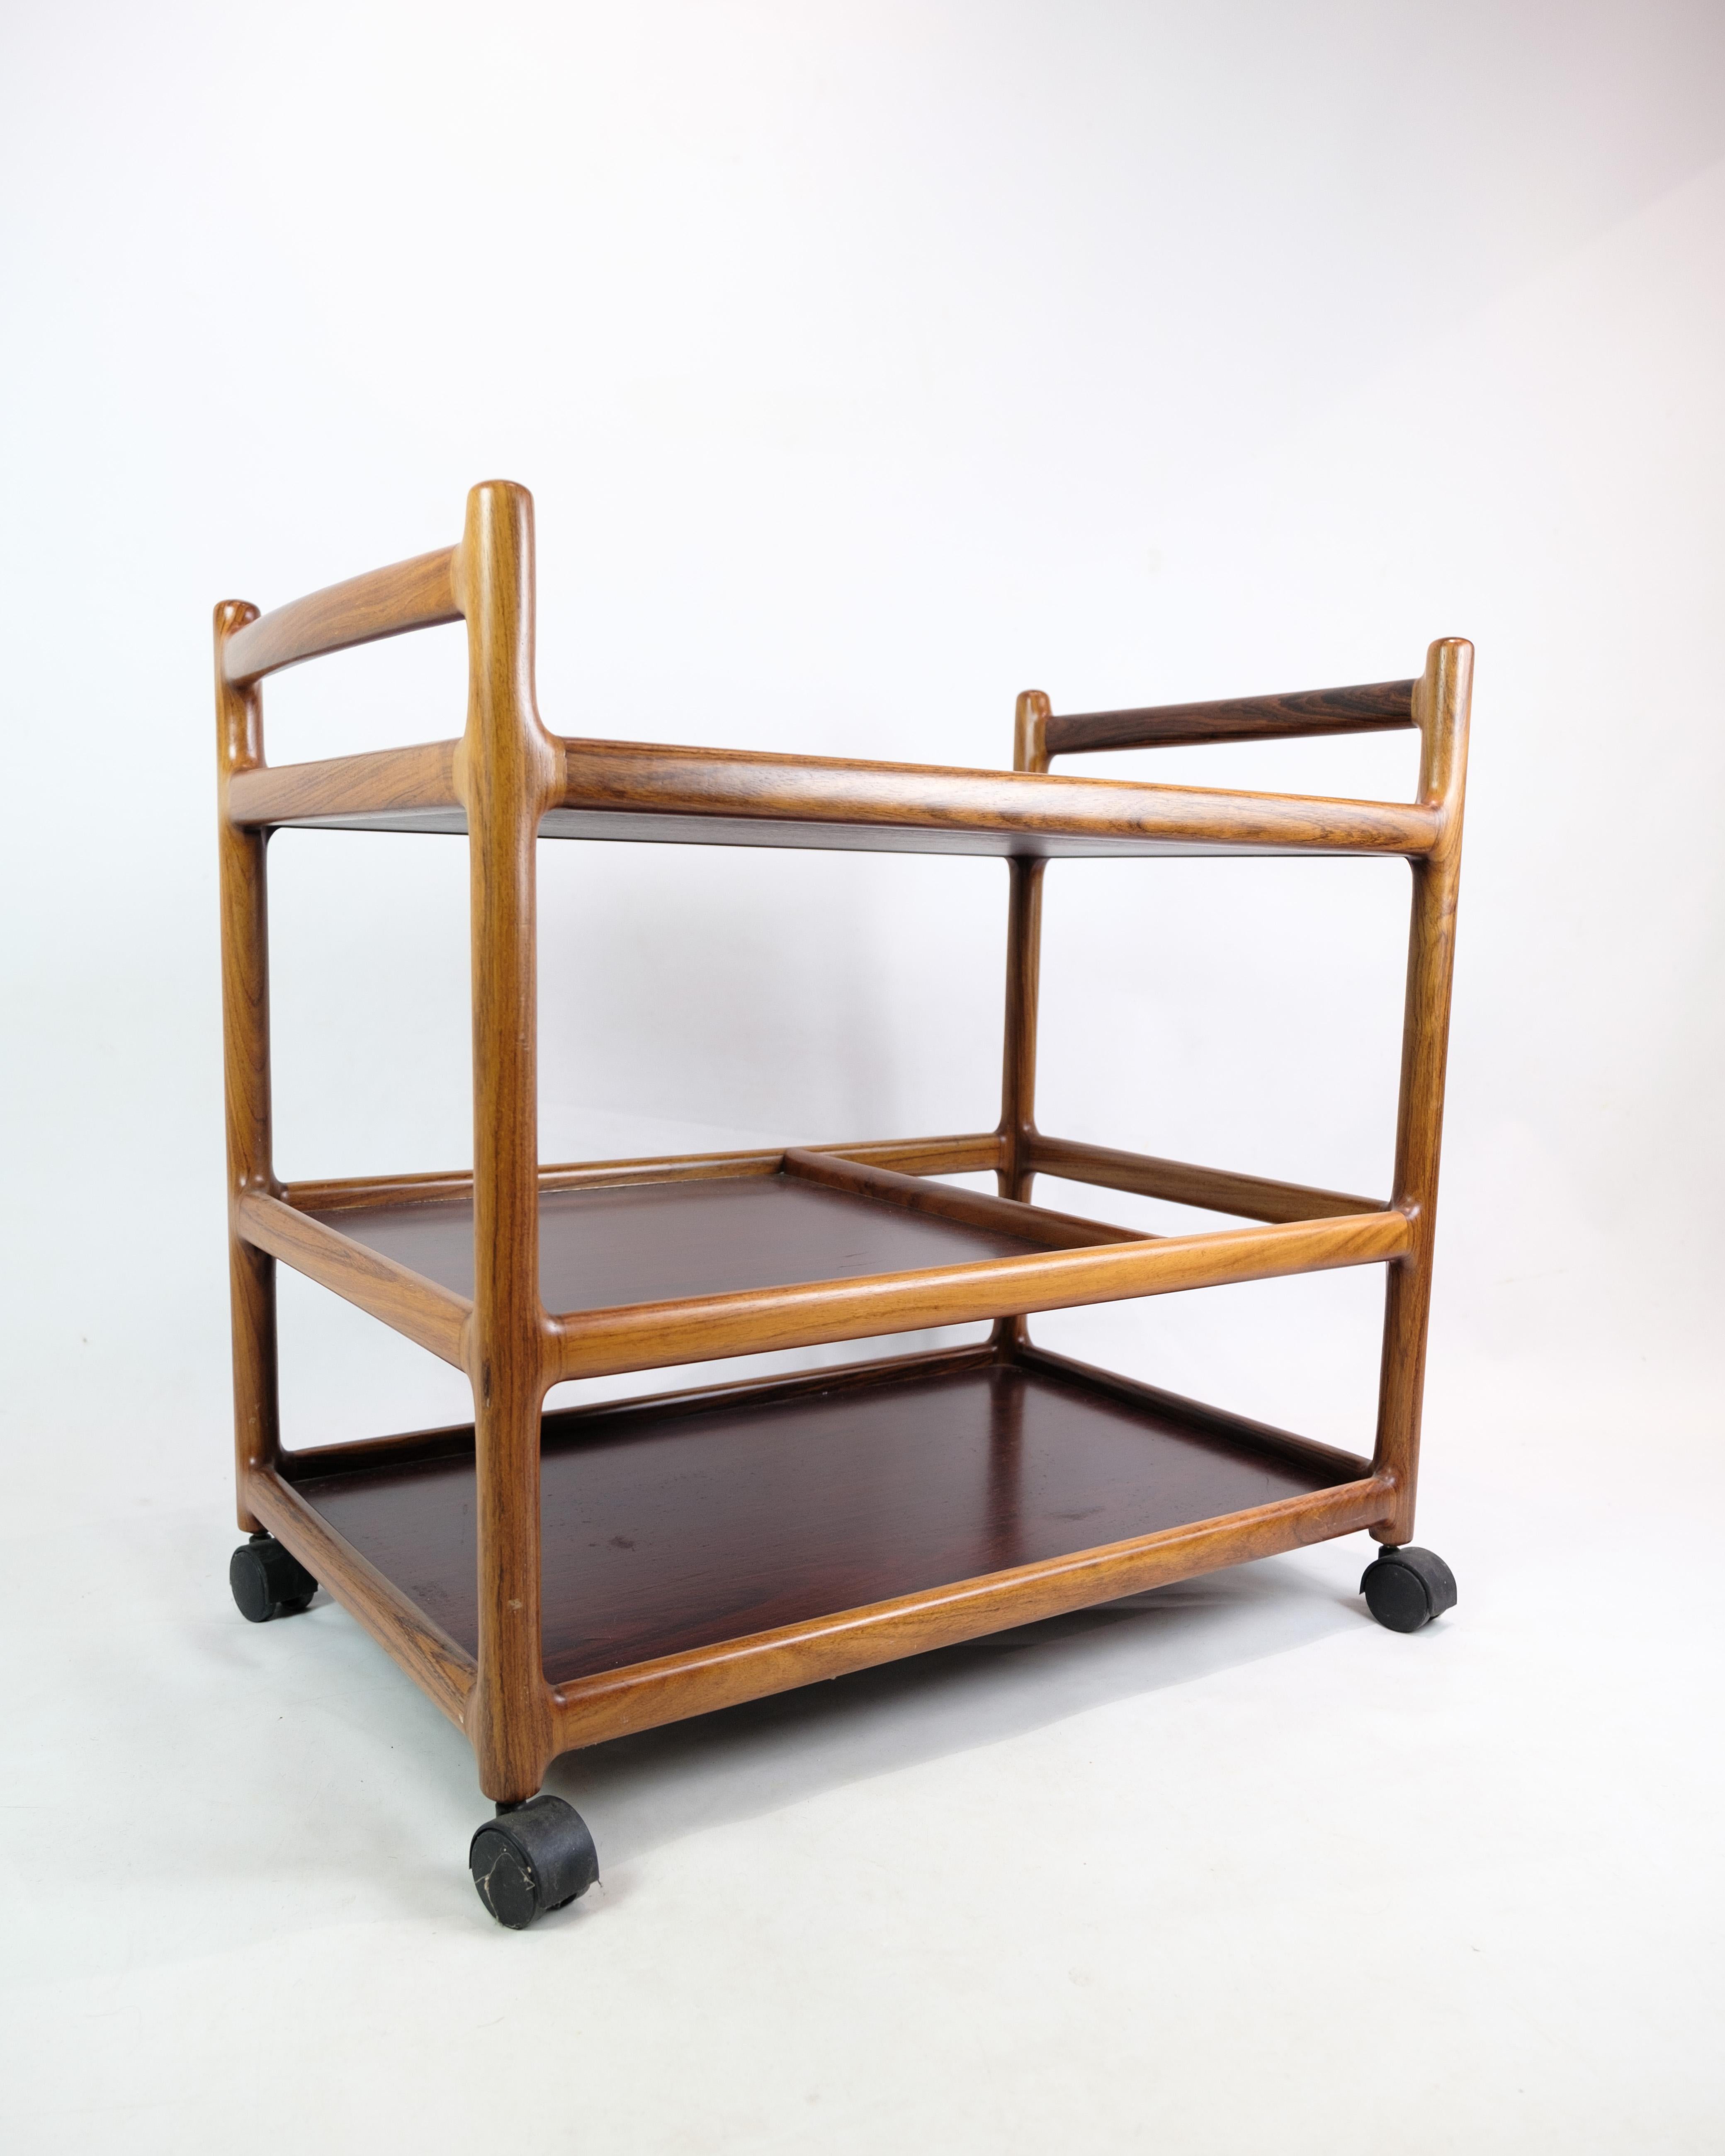 Der von Johannes Andersen entworfene und von der Silkeborg Møbelfabrik in den 1960er Jahren hergestellte Rolltisch aus Palisanderholz ist ein Beispiel dänischer Möbelkunst aus der Mitte des 20. Jahrhunderts. Johannes Andersen war für sein elegantes